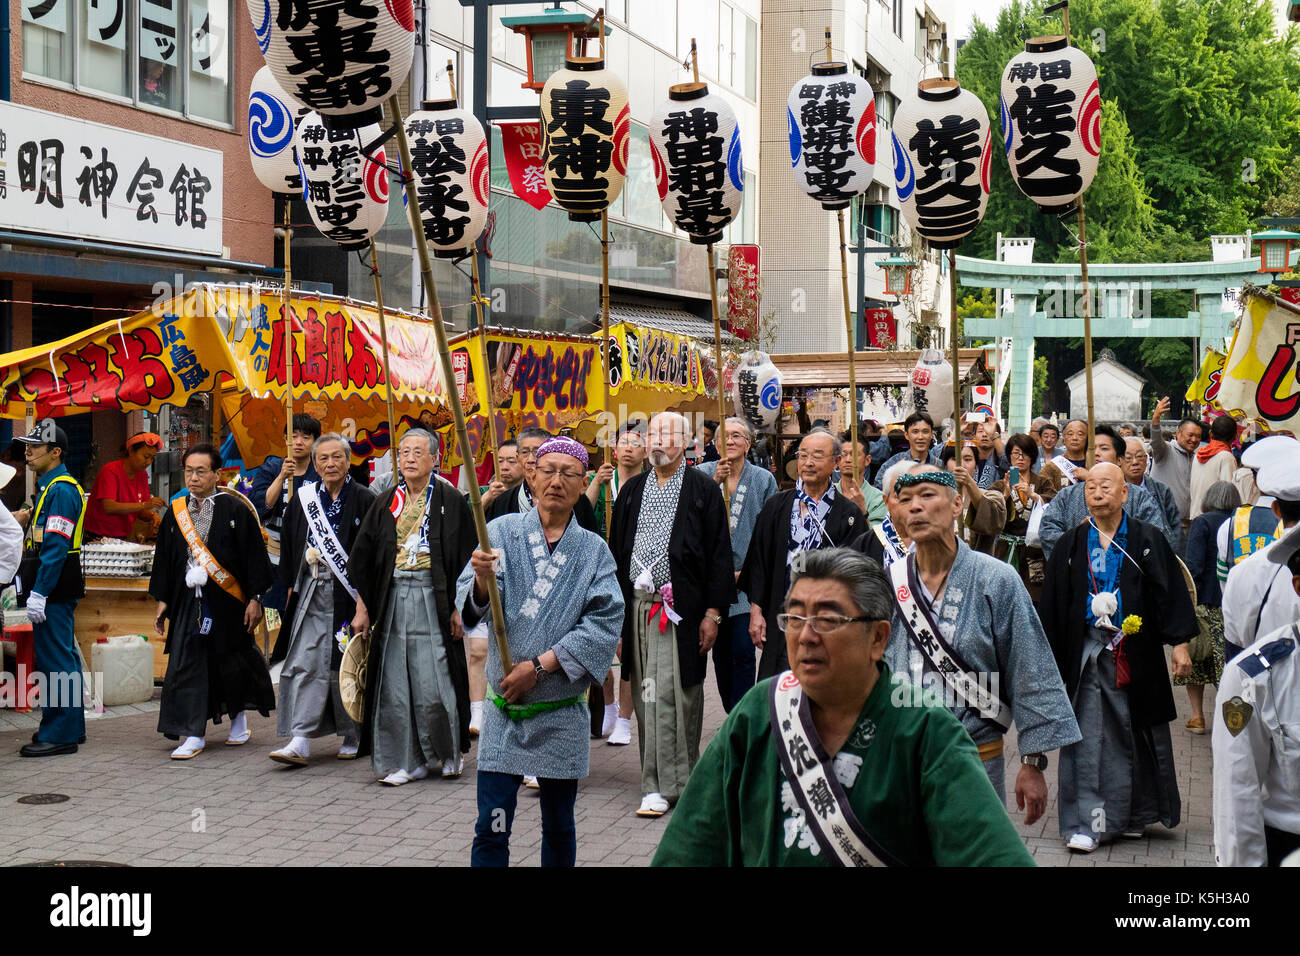 Tokio, Japón - 14 de mayo de 2017: los participantes van vestidos con kimono tradicional está llevando faroles de papel con caracteres japoneses en el kanda matsuri festiv Foto de stock